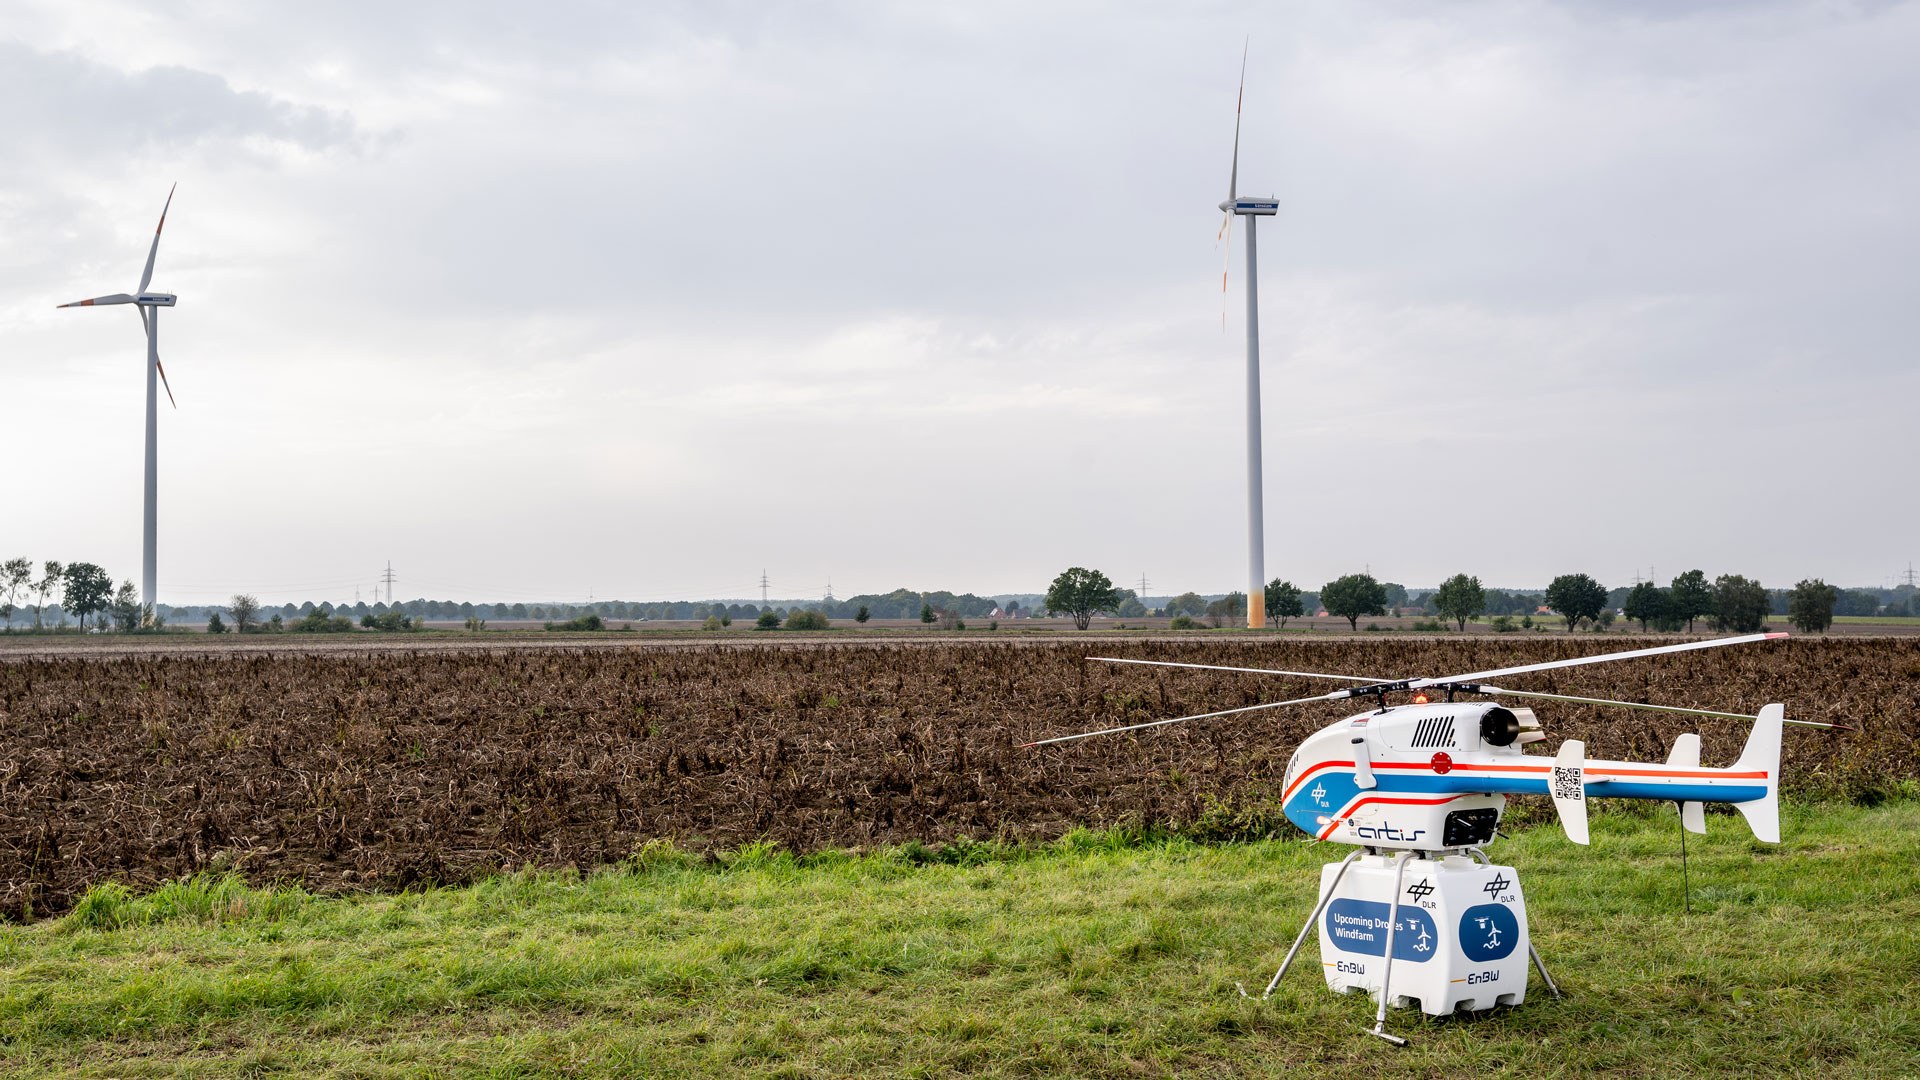 superARTIS at the EnBW Schwienau wind farm in Lower Saxony